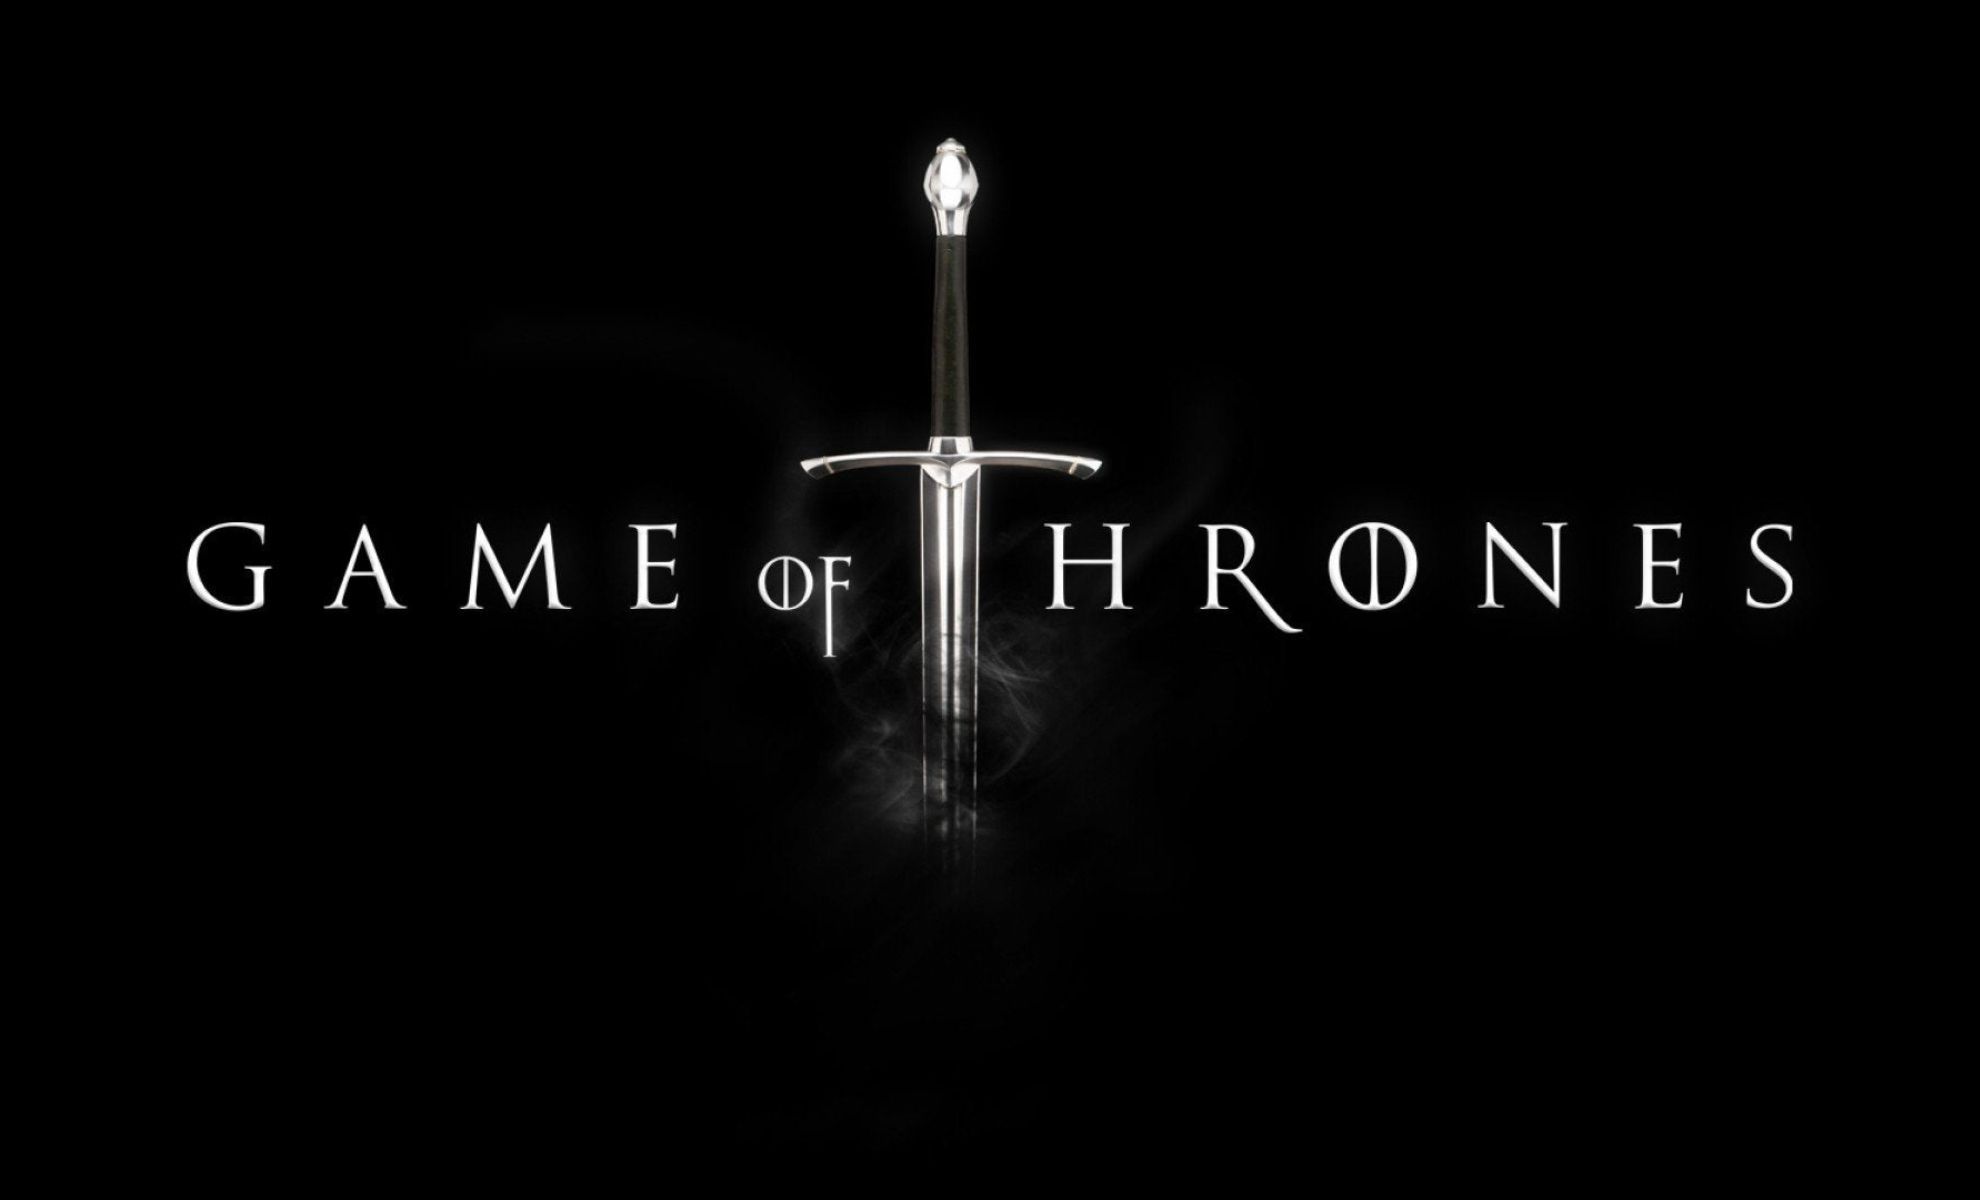 L'univers de Game of Thrones s'agrandit découvrez les spin-offs de la série